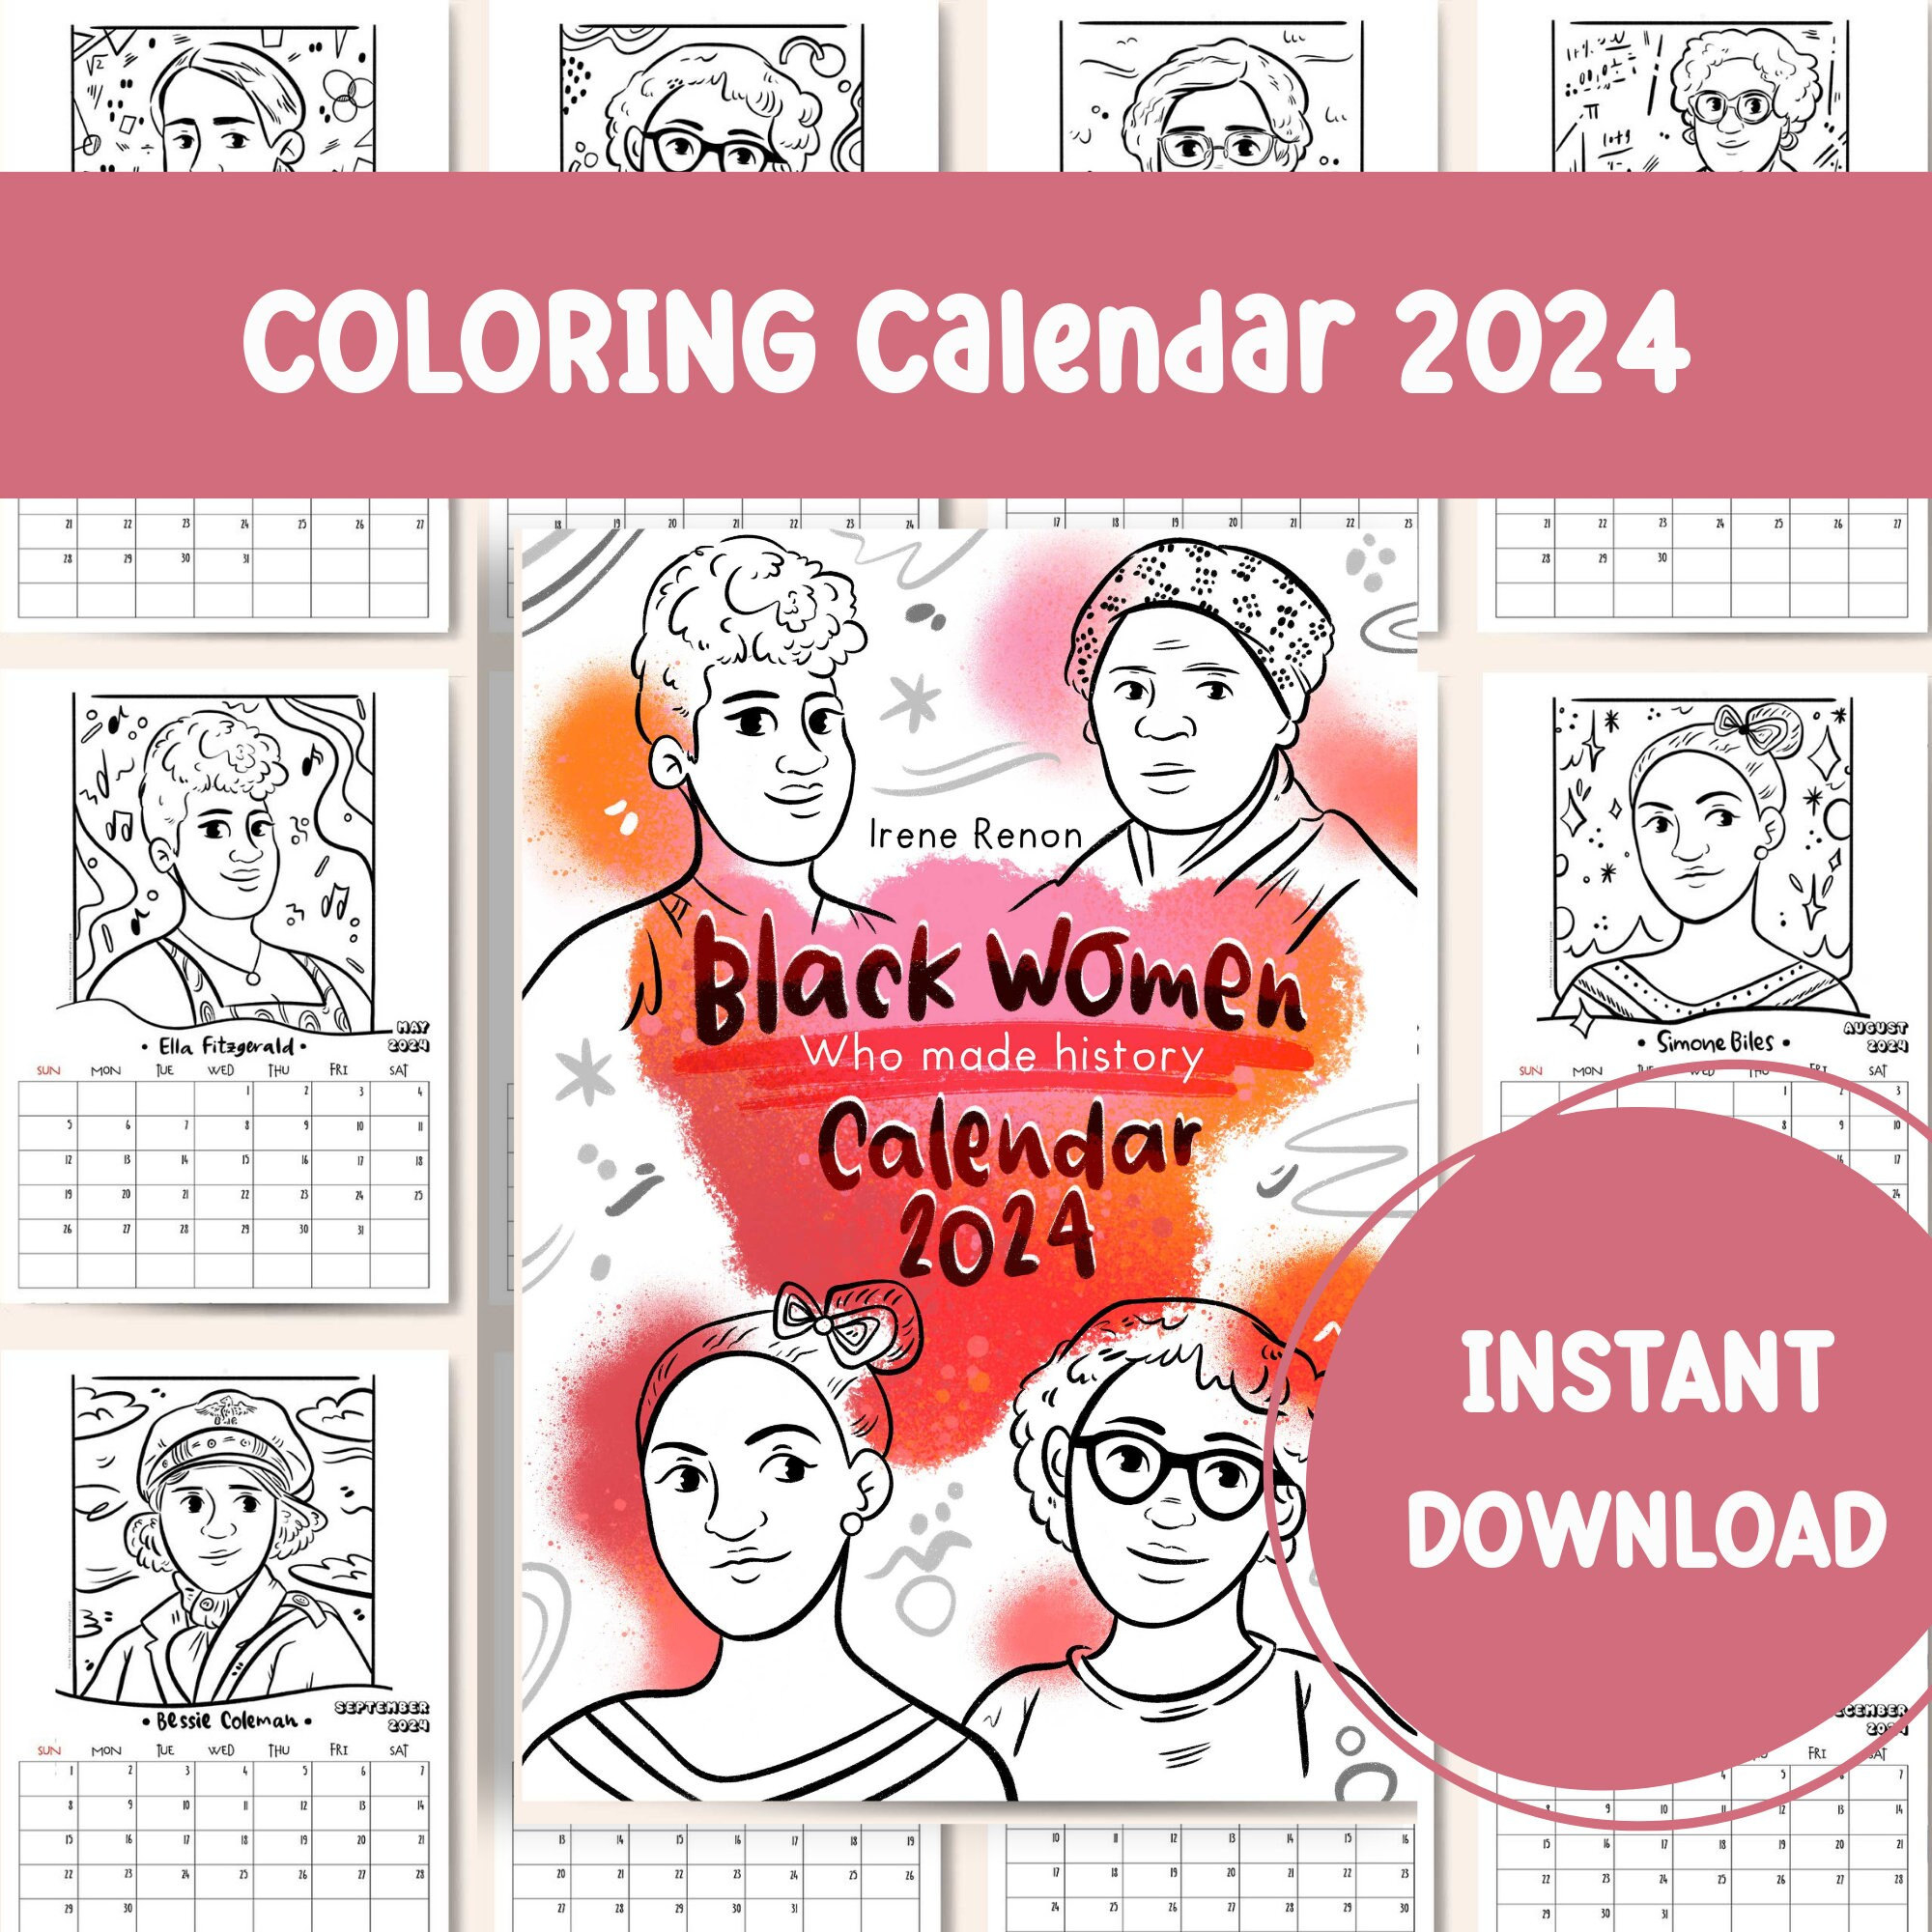 Coloring Calendar 2024 Printable Calendar Famous Black Women - Etsy for Free Printable Coloring Calendar 2024